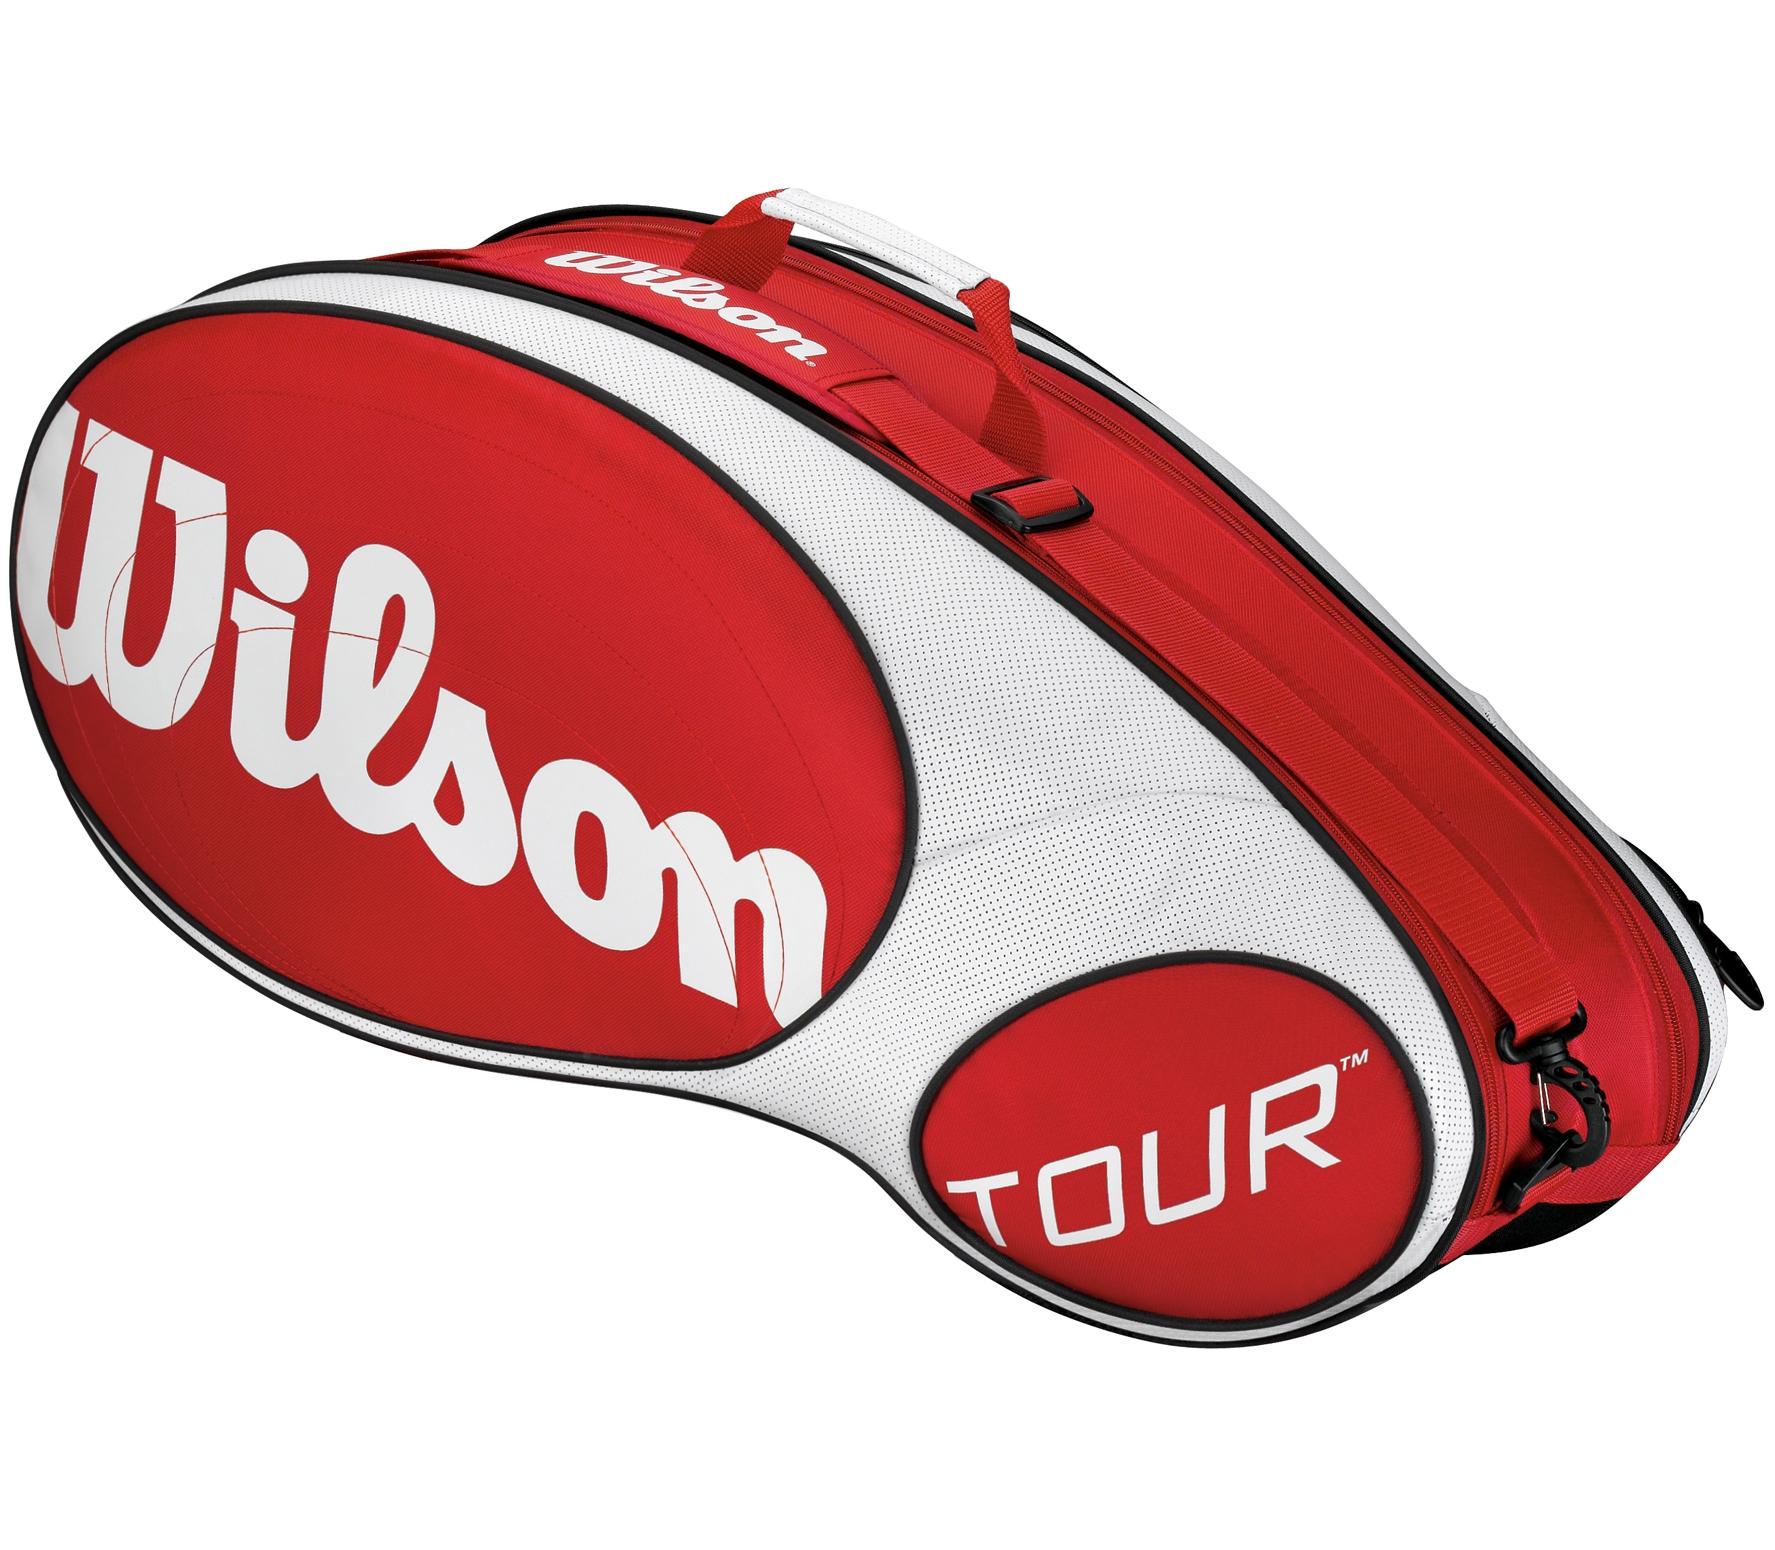 Foto Wilson - Raquetero Tour 6 rojo/blanco foto 736256